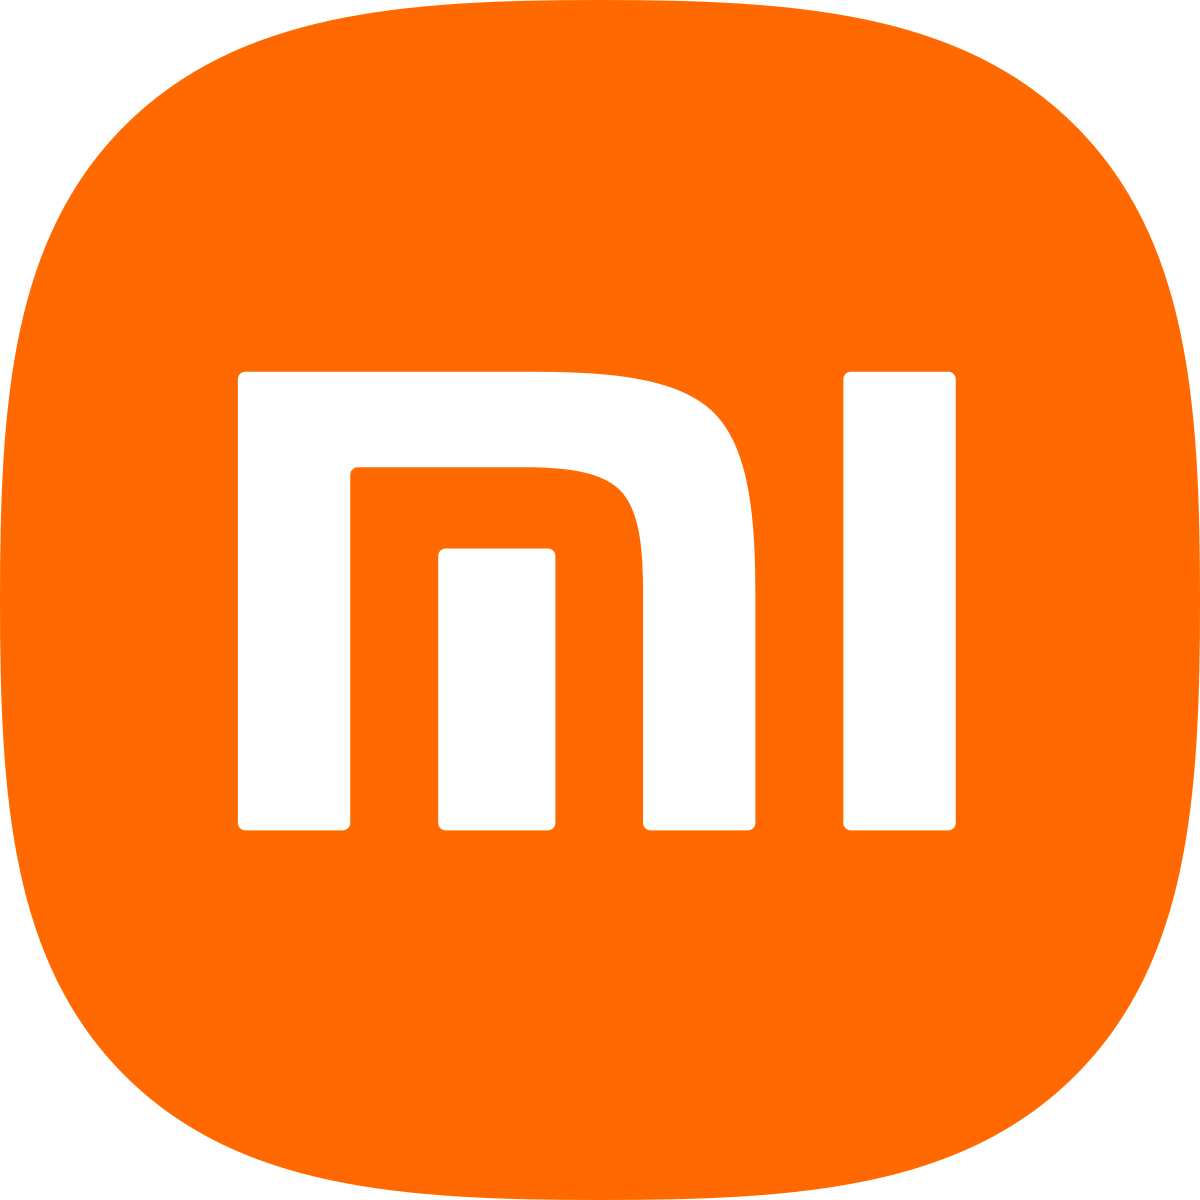 Het logo van Xiaomi - de Chinese smartphonefabrikant